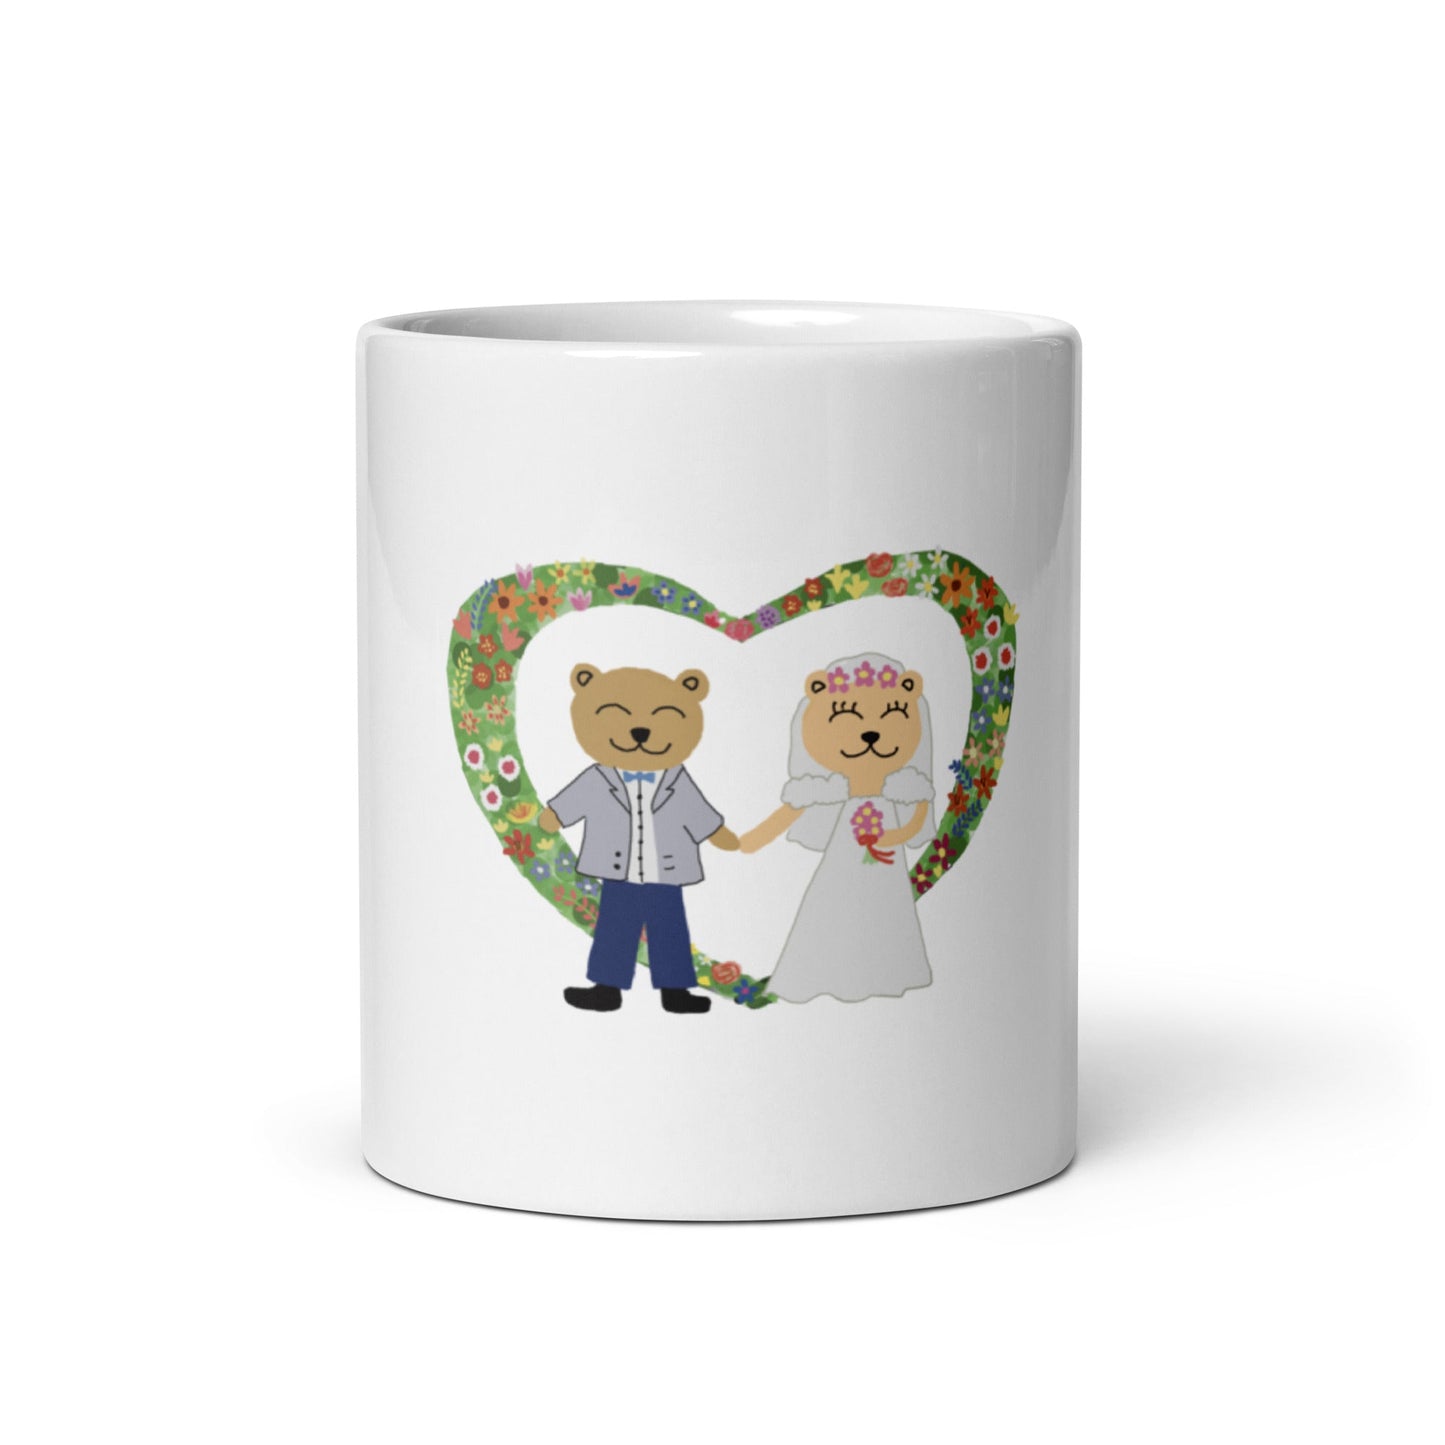 White glossy mug (Personalized)